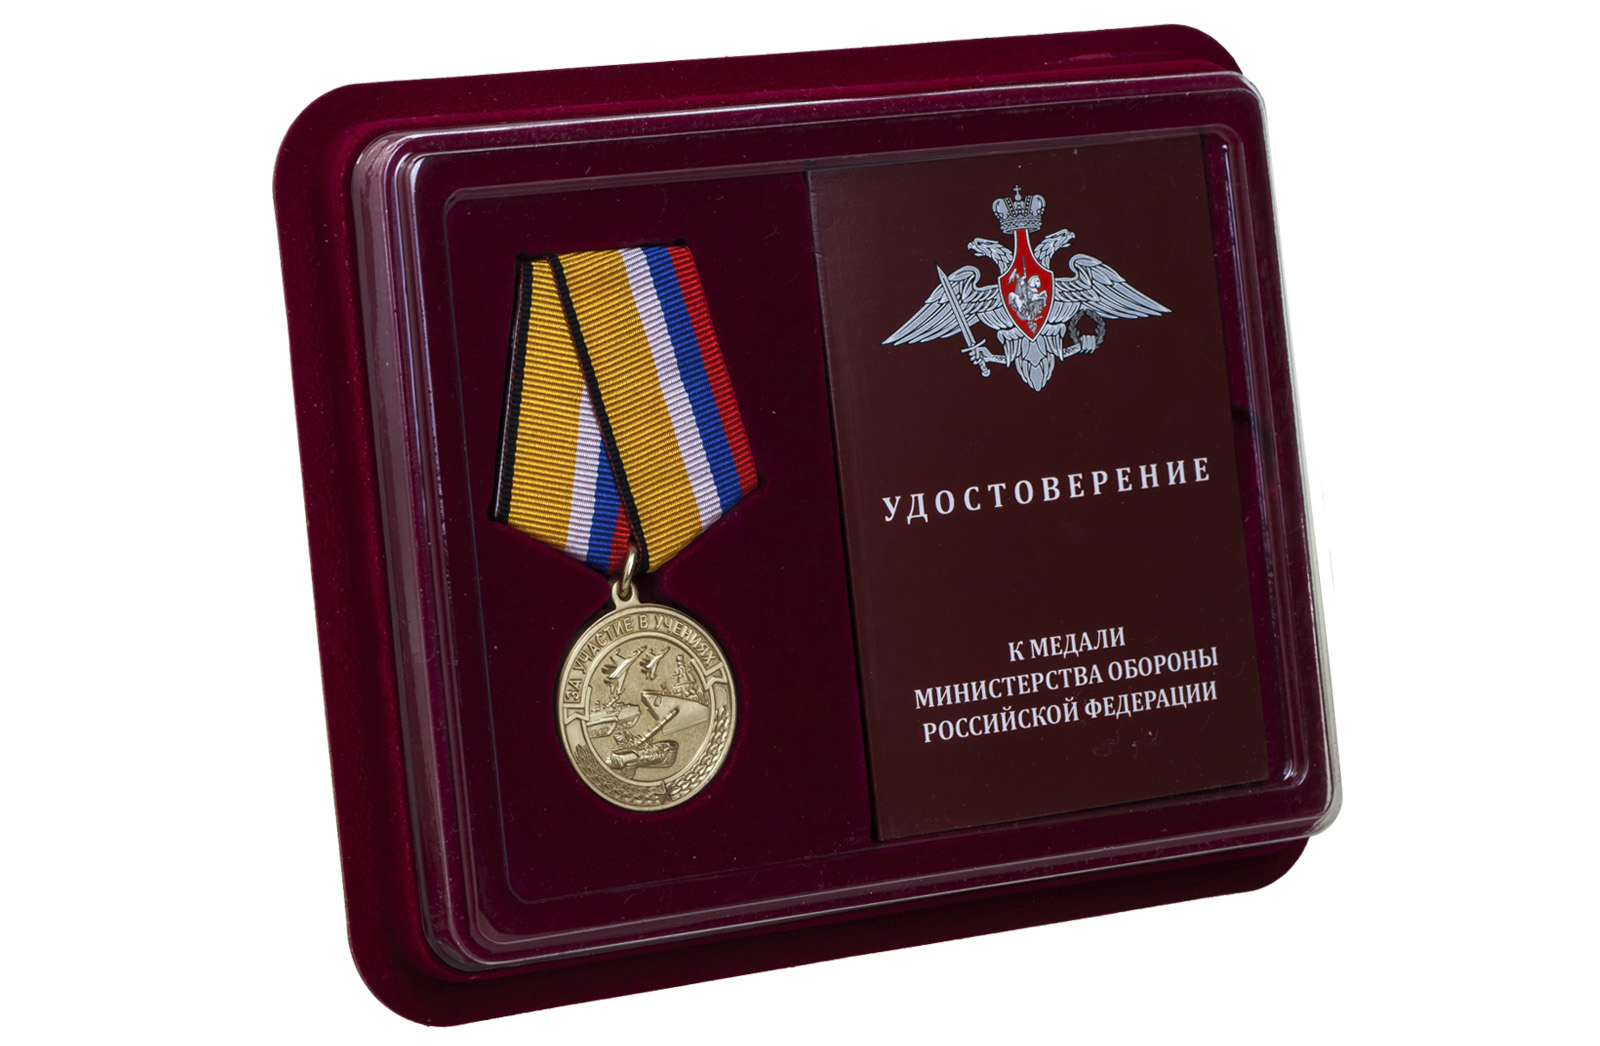 Памятная медаль "За участие в учениях" 